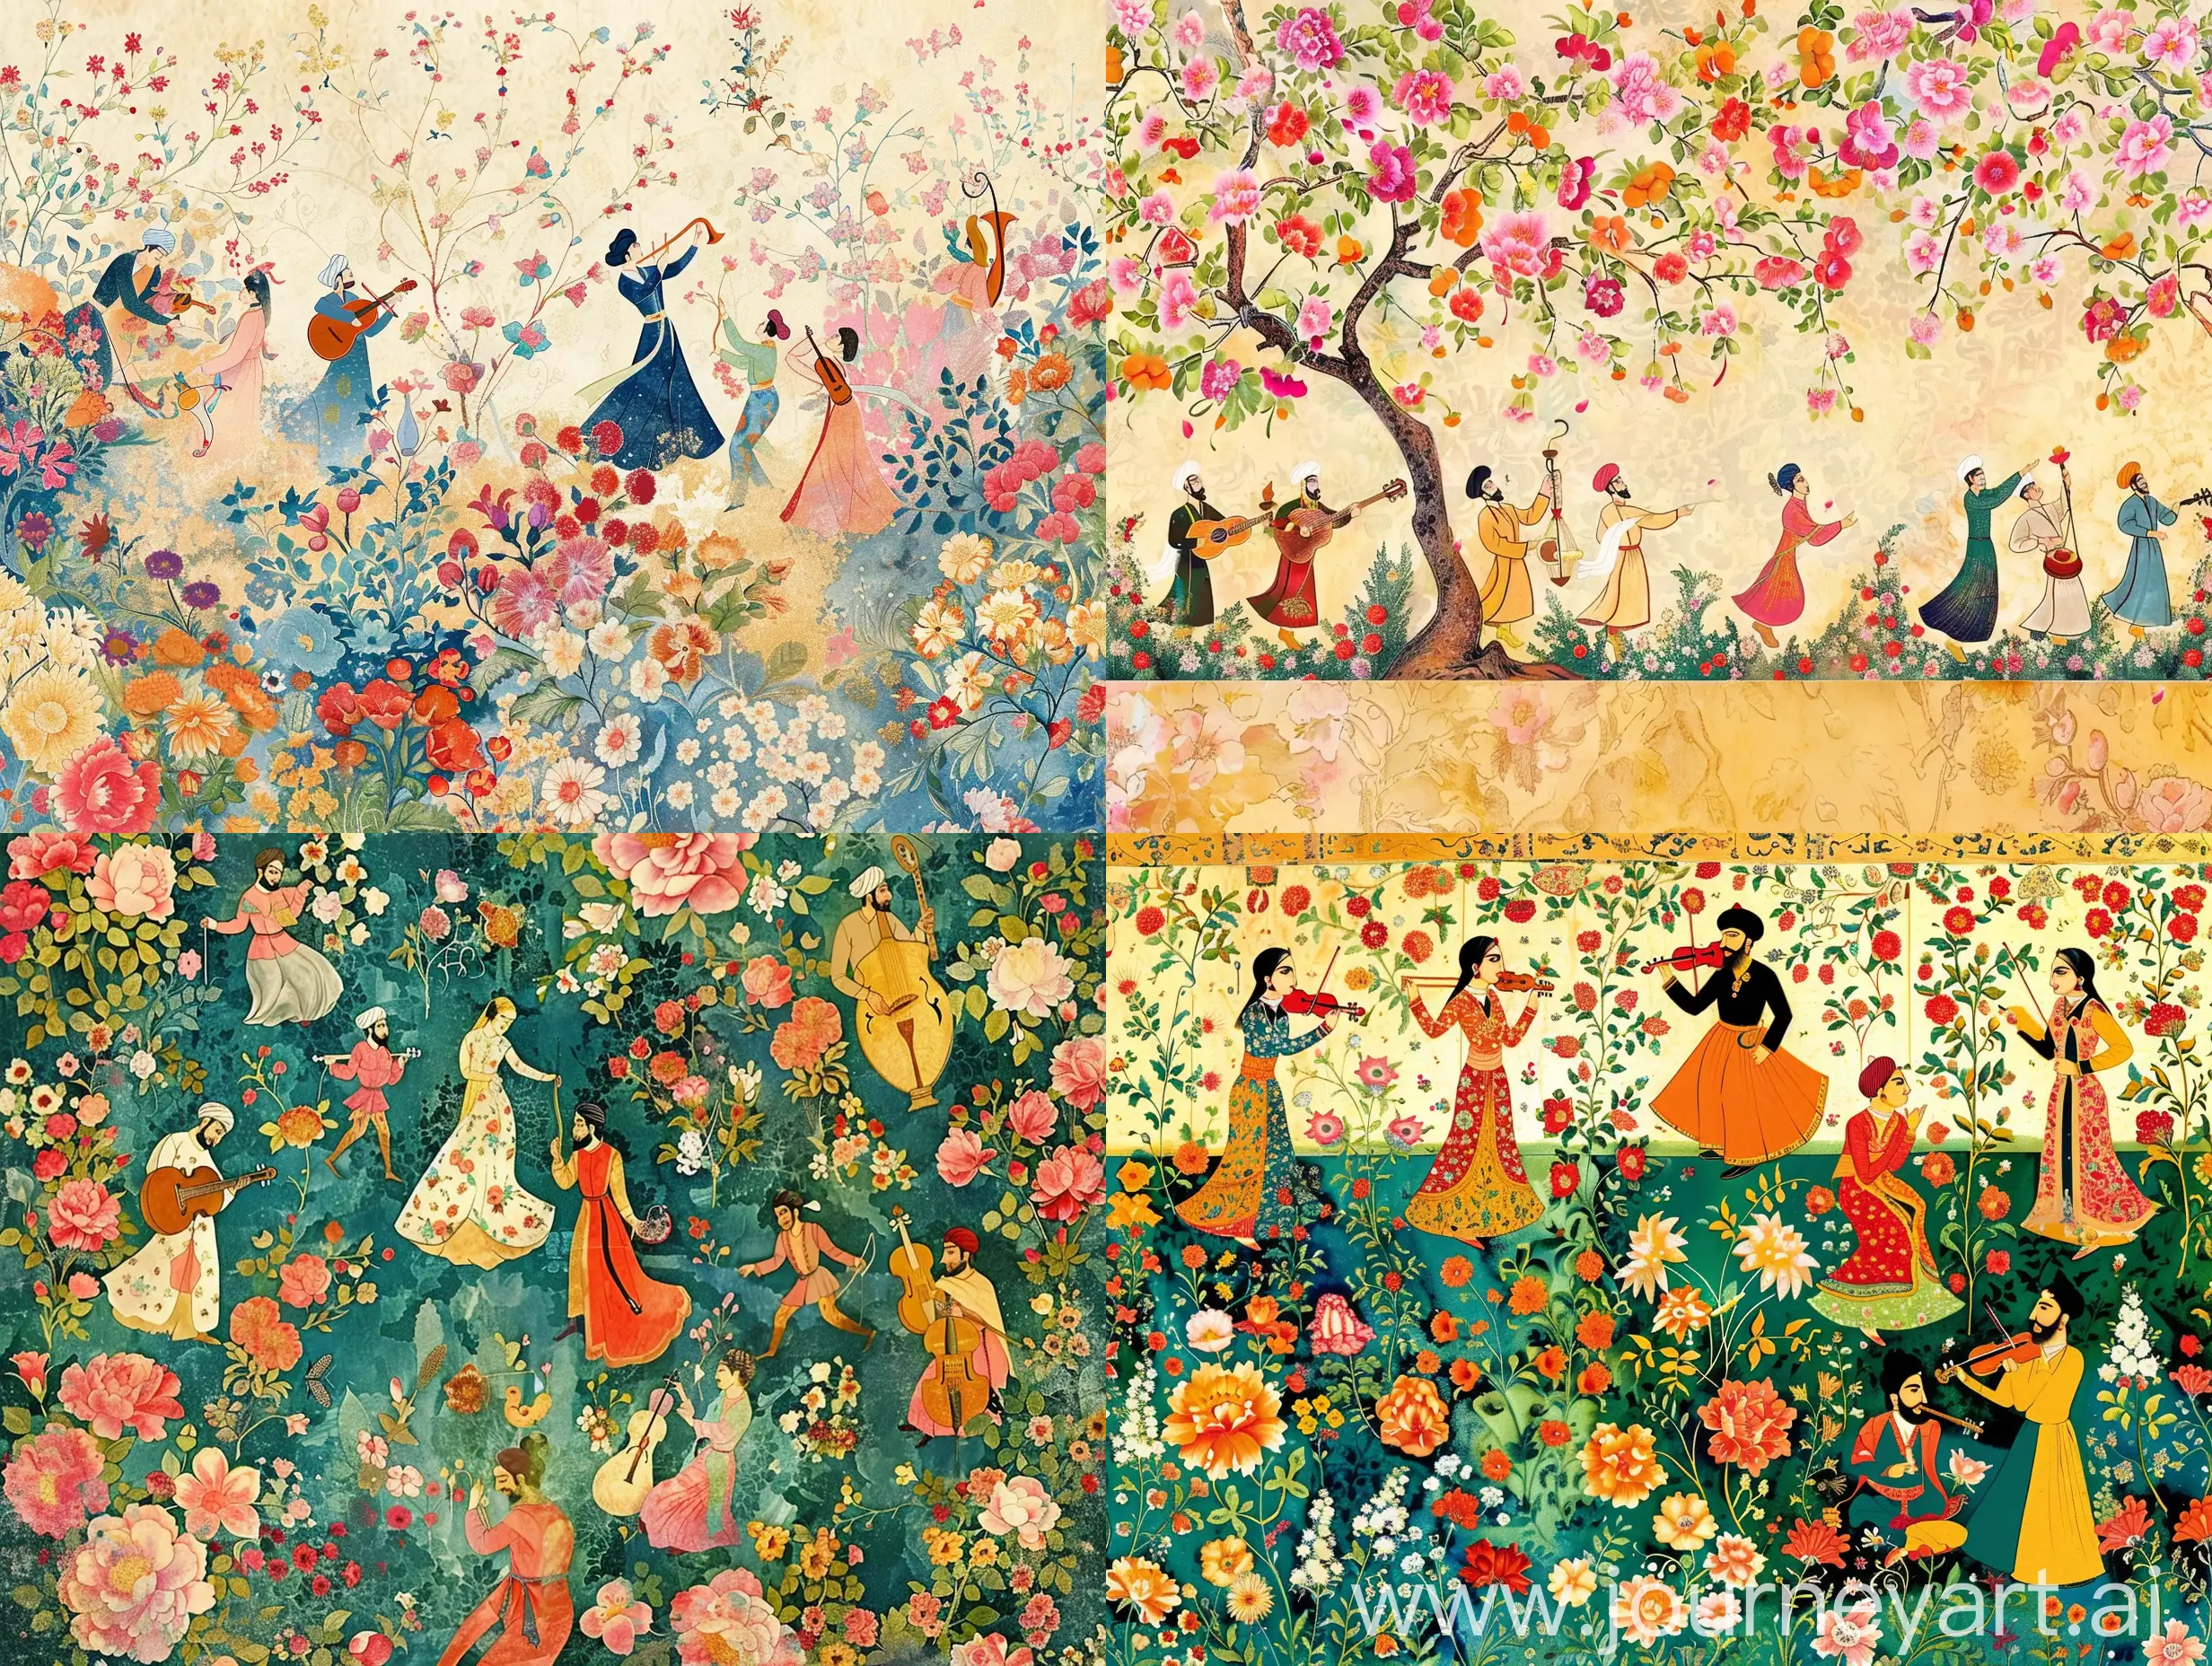 یک بنر خیلی واید برای سایت  میخوام با طرح گل و بوته ایرانی و رنگهای نقاشی مینیاتور ایرانی دوره شاه طهماسب و مطرب و نوازنده و زوج های رقصان